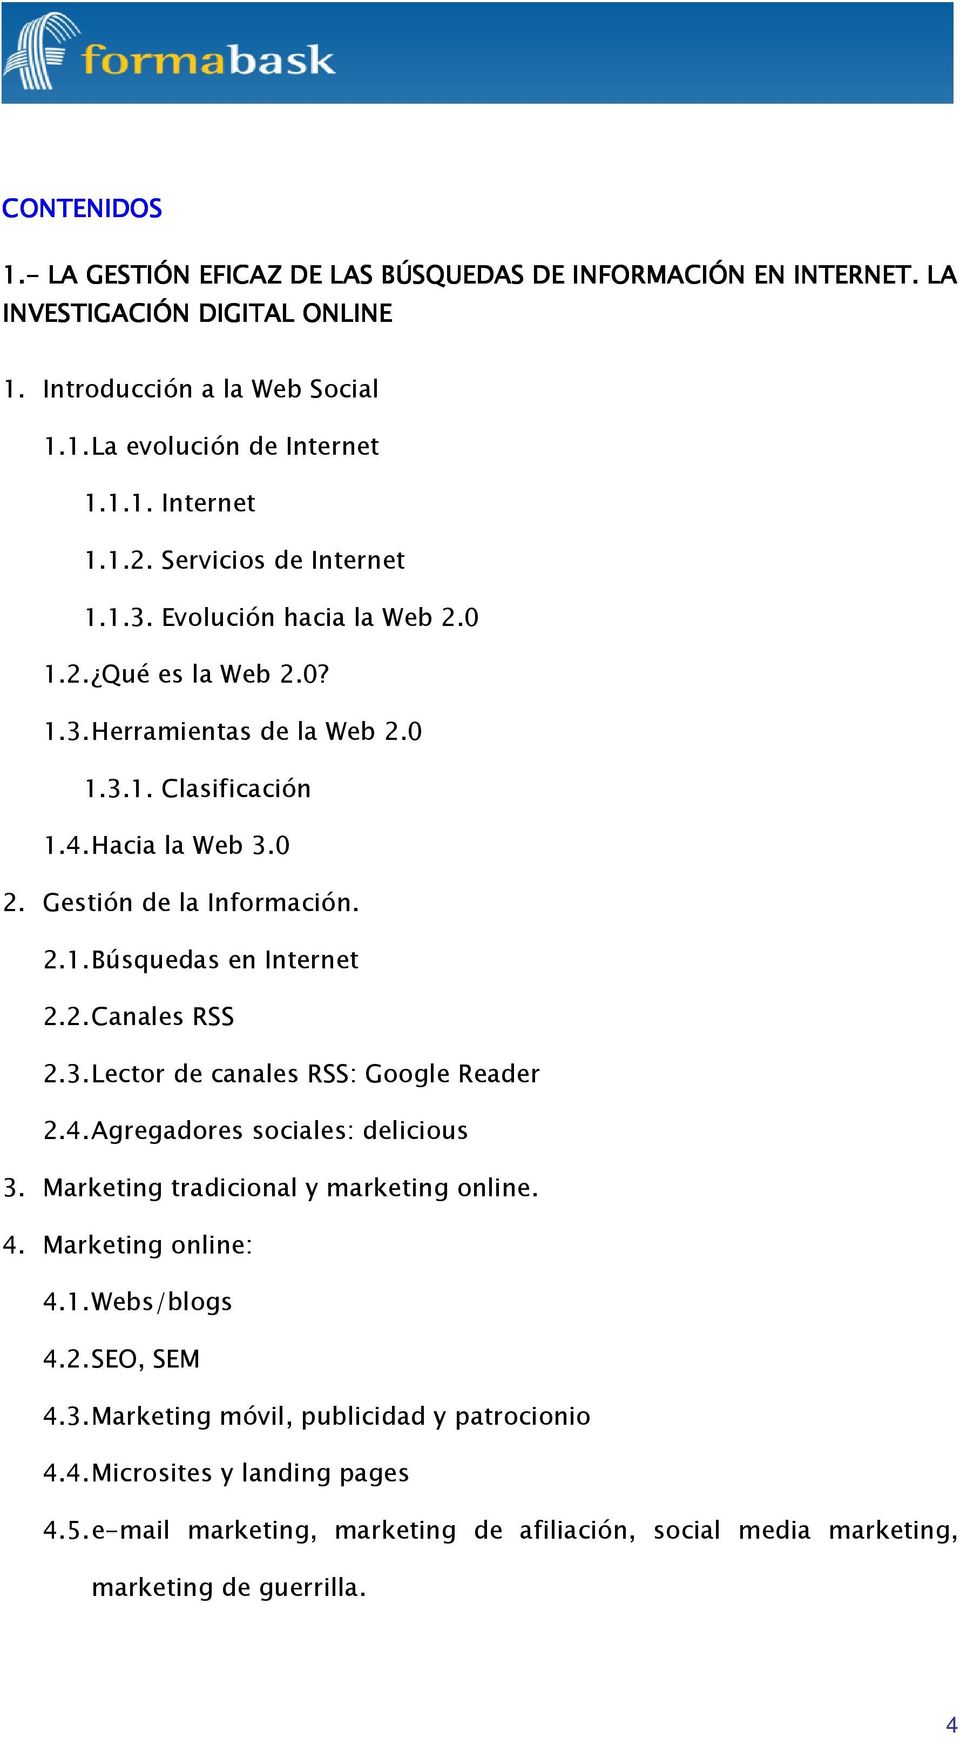 2. Canales RSS 2.3. Lector de canales RSS: Google Reader 2.4. Agregadores sociales: delicious 3. Marketing tradicional y marketing online. 4. Marketing online: 4.1. Webs/blogs 4.2. SEO, SEM 4.3. Marketing móvil, publicidad y patrocionio 4.